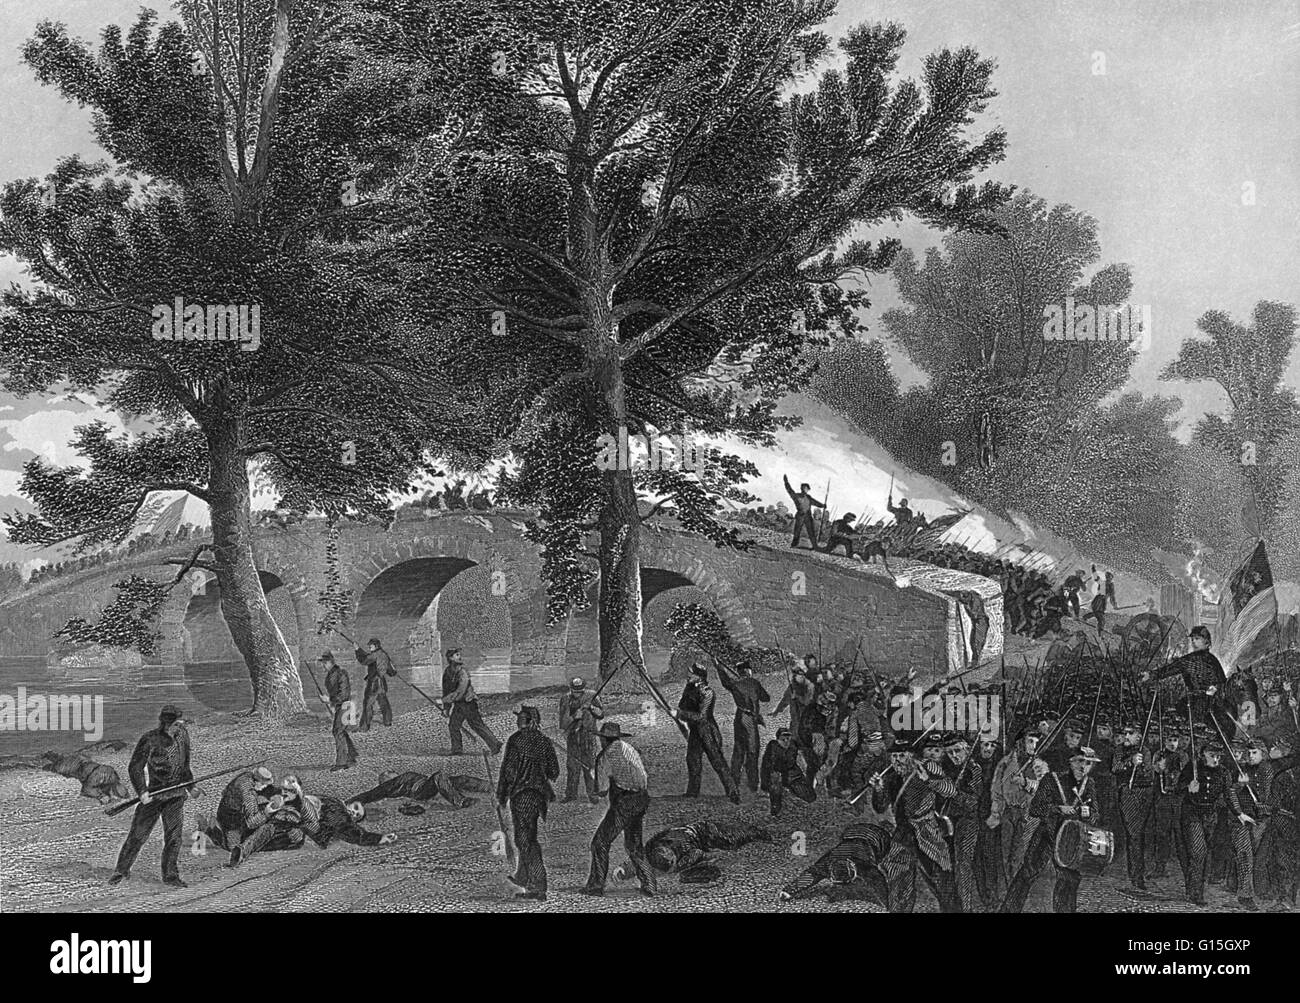 Ein Druck von einem Gemälde von Alonzo Chappel ist berechtigt: Schlacht von Antietam. Galant in Höhe von General Burnside Division an der Brücke. Die Schlacht von Antietam, auch bekannt als Schlacht von Sharpsburg, im Süden, wurde am 17. September 1862, in der Nähe von Sh gekämpft. Stockfoto